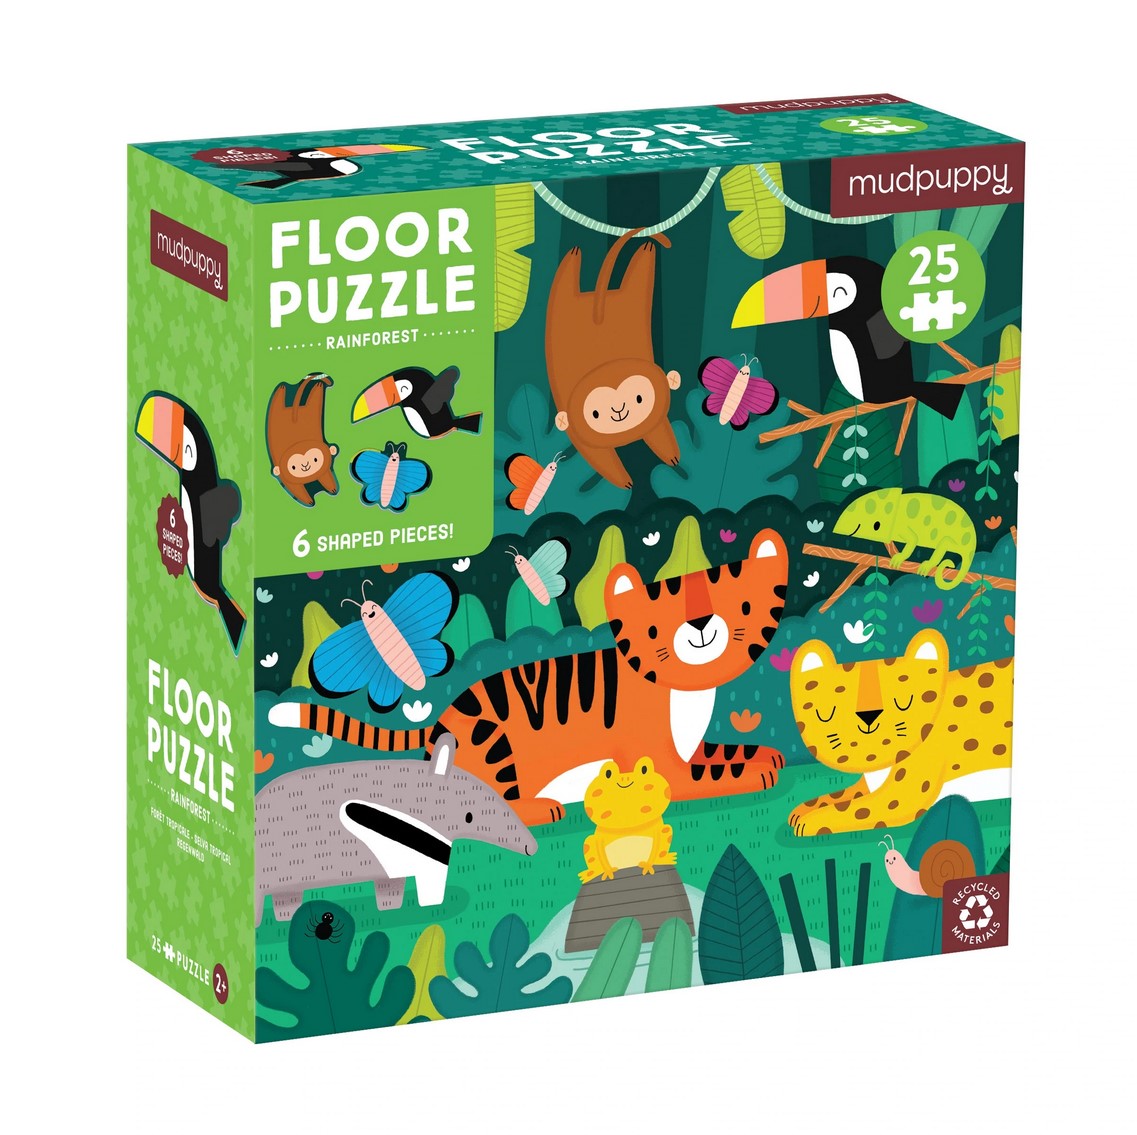 Rainforest 25pcs Floor Puzzle with Shaped Pieces